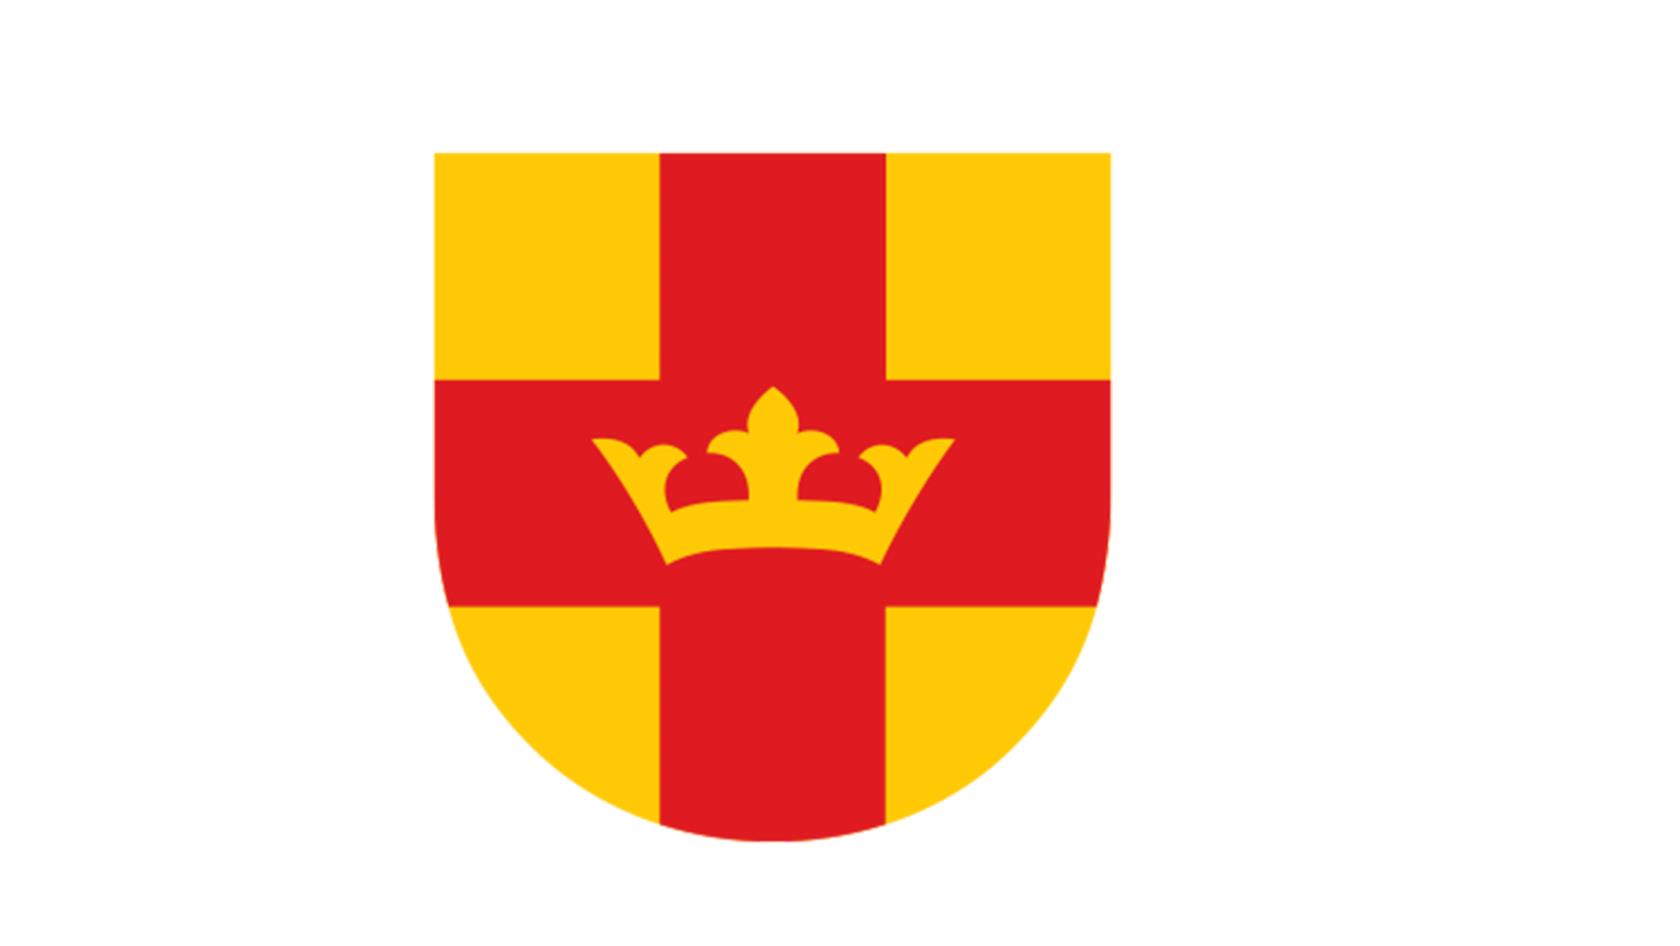 Svenska kyrkans vapensköld i rött och gult med en krona.